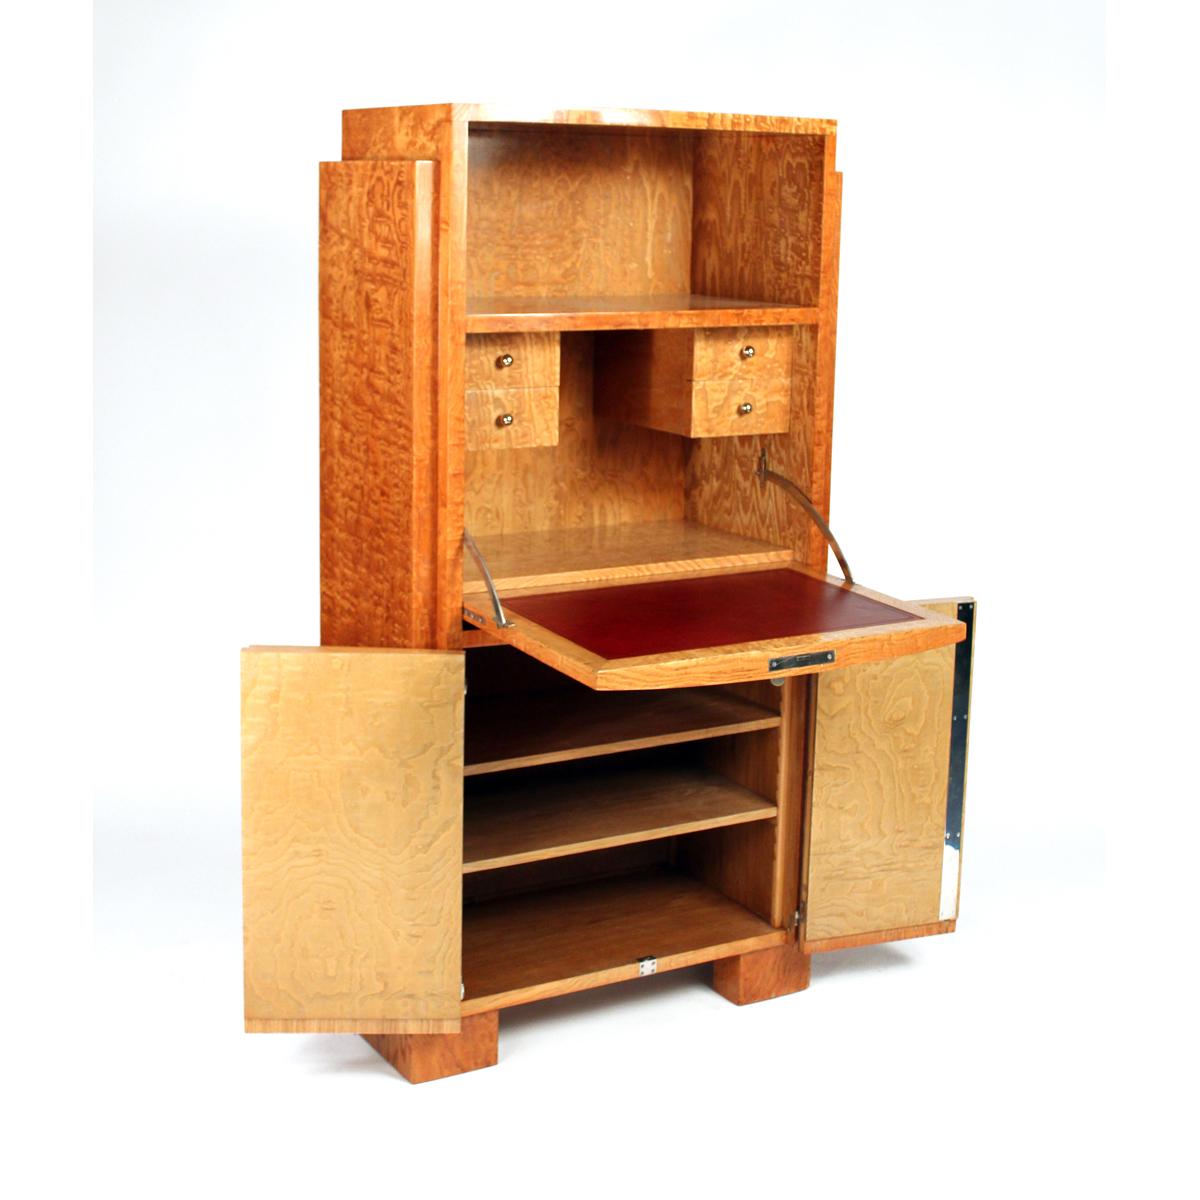 Ce bureau secret a été conçu par Jacques Adnet, et a été réalisé en bois de frêne Tamo.  Le style de ce secrétaire se caractérise par des lignes épurées, des formes géométriques et une combinaison de différents matériaux tels que le bois et le cuir